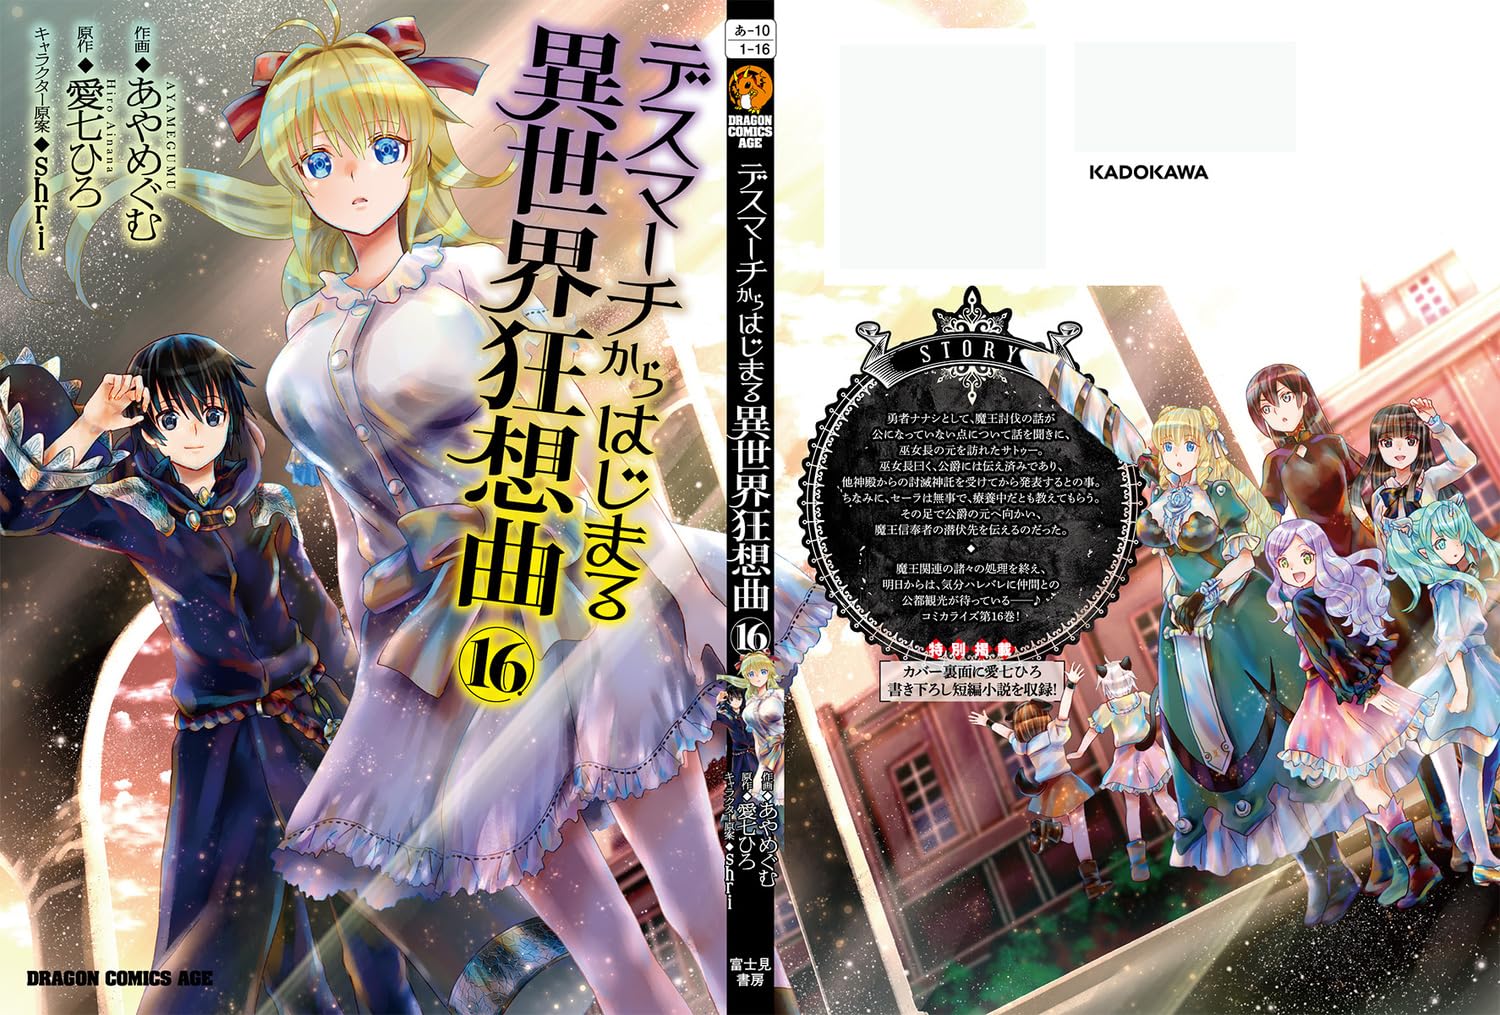 Faixa 01 - Anime X Novel